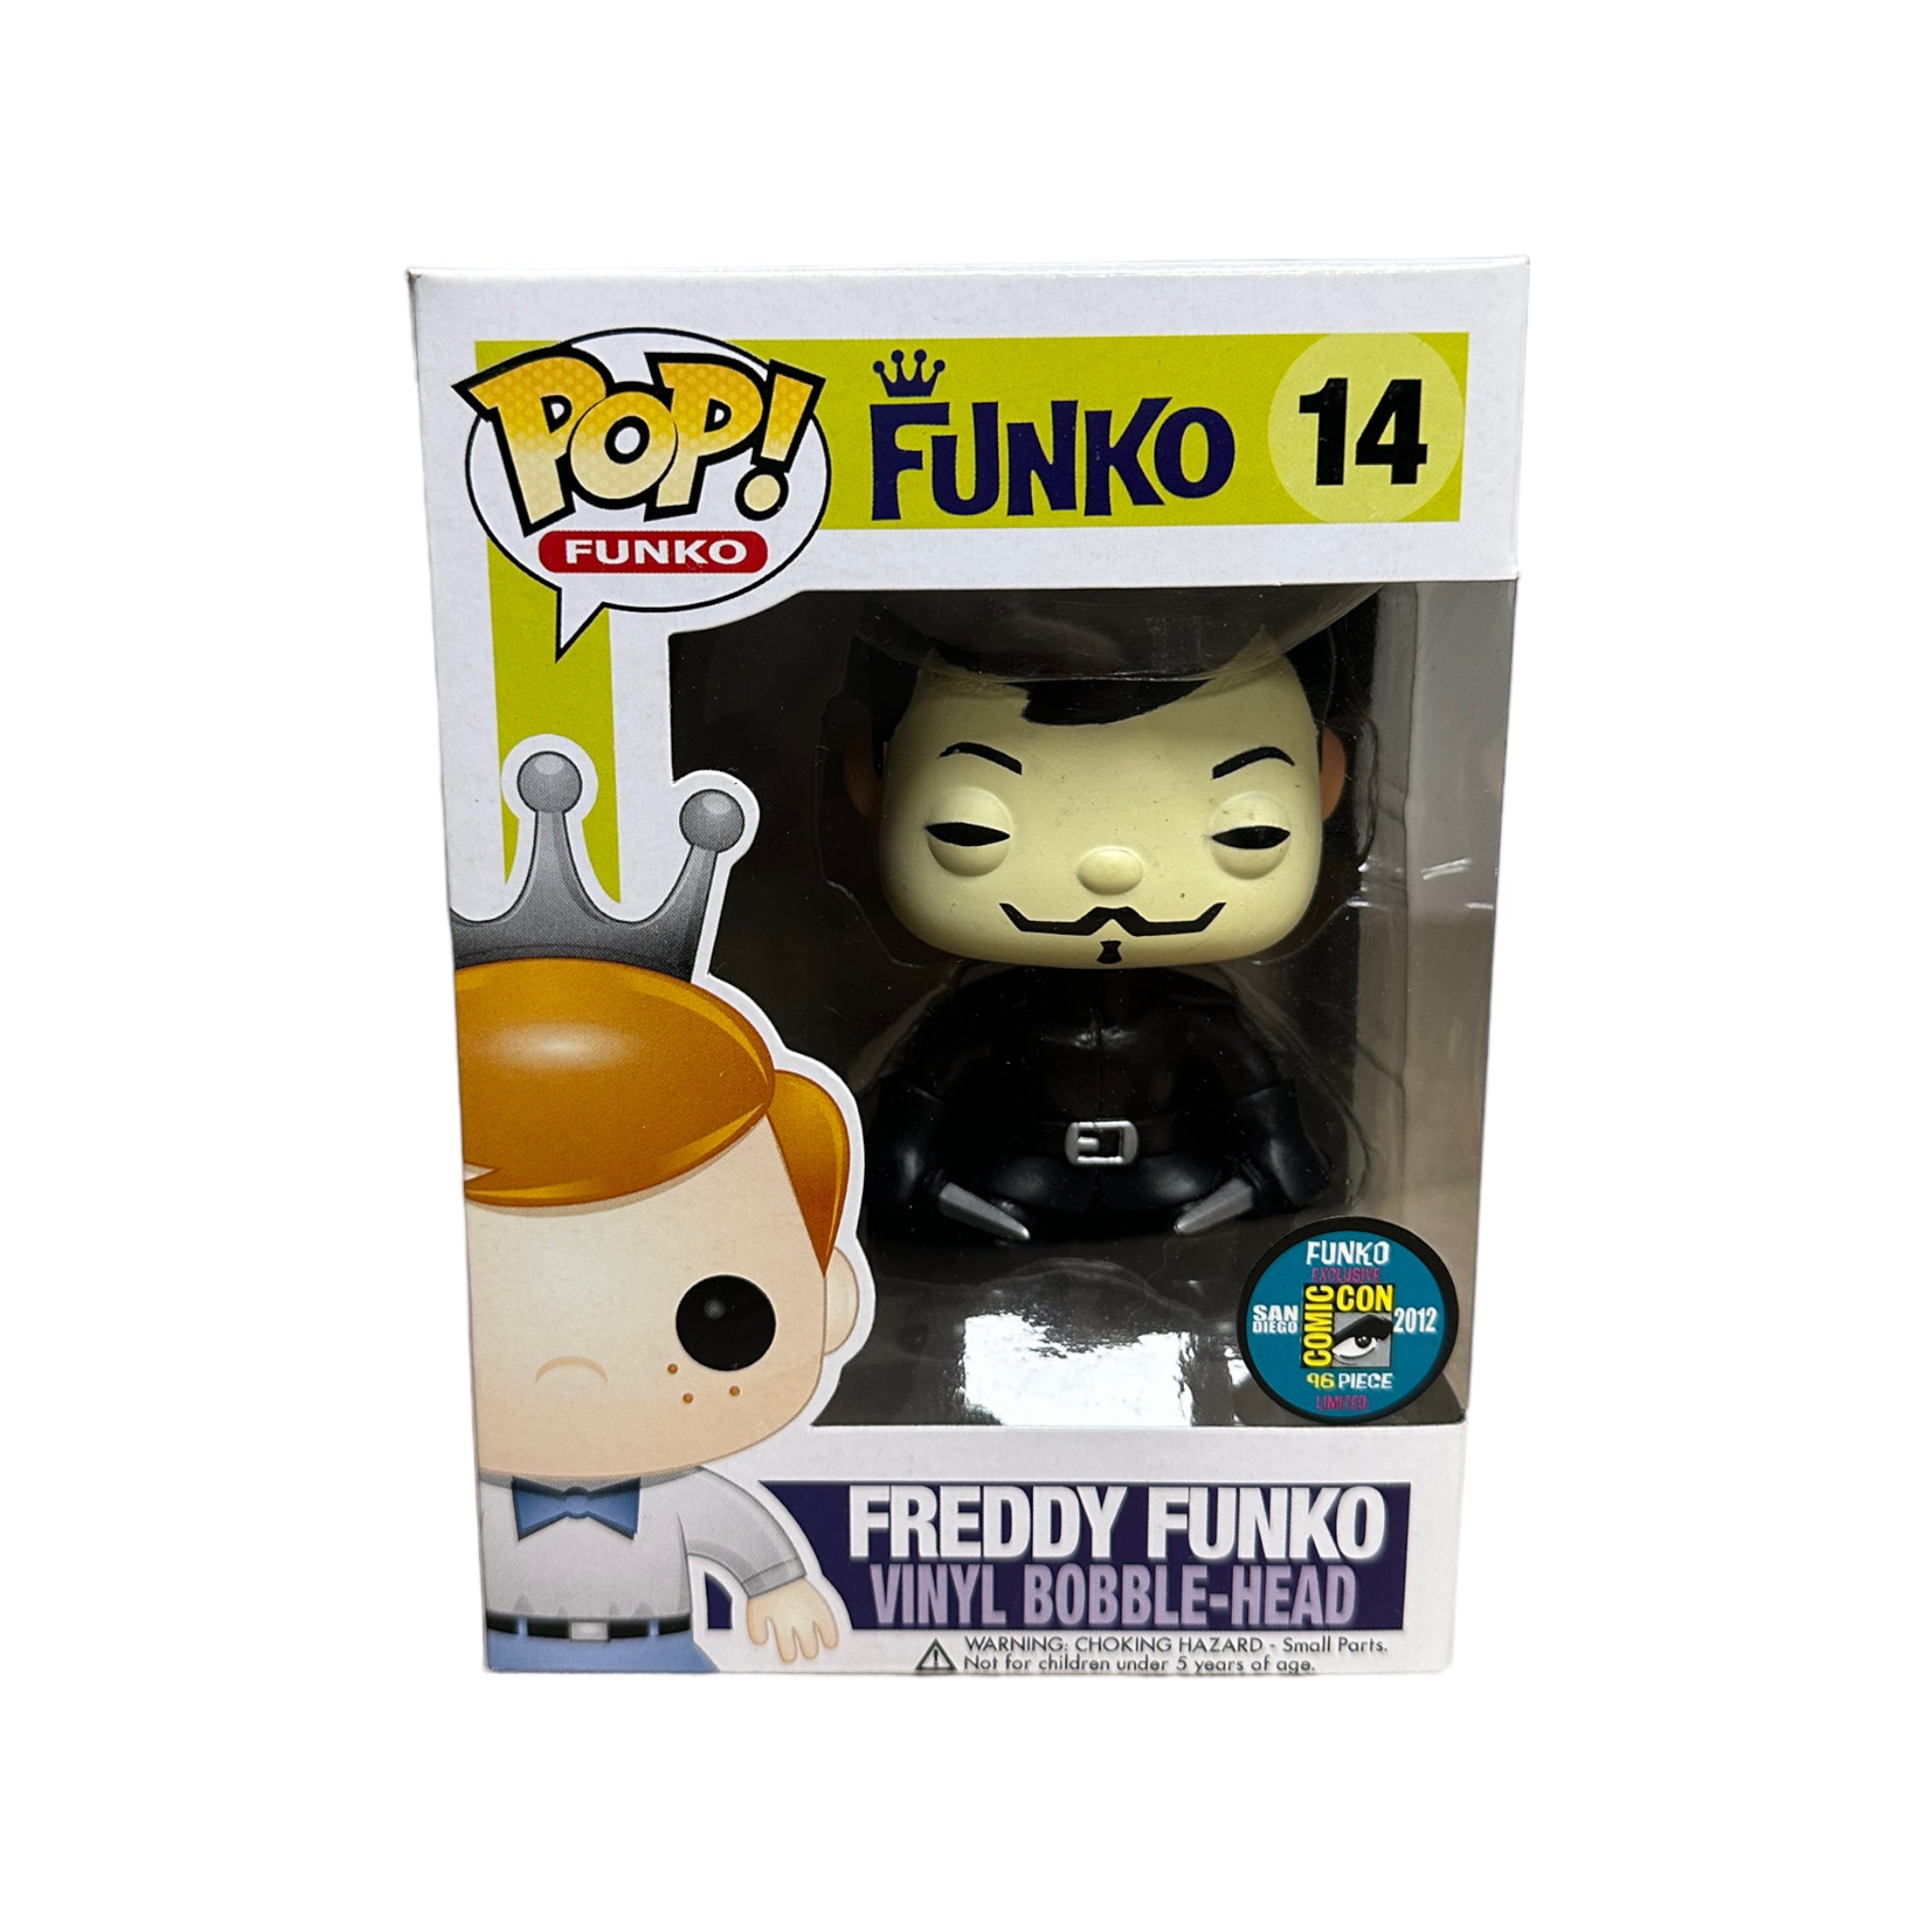 Freddy Funko as V For Vendetta #14 Funko Pop! - SDCC 2012 Exclusive LE96 Pcs - Condition 8.75/10